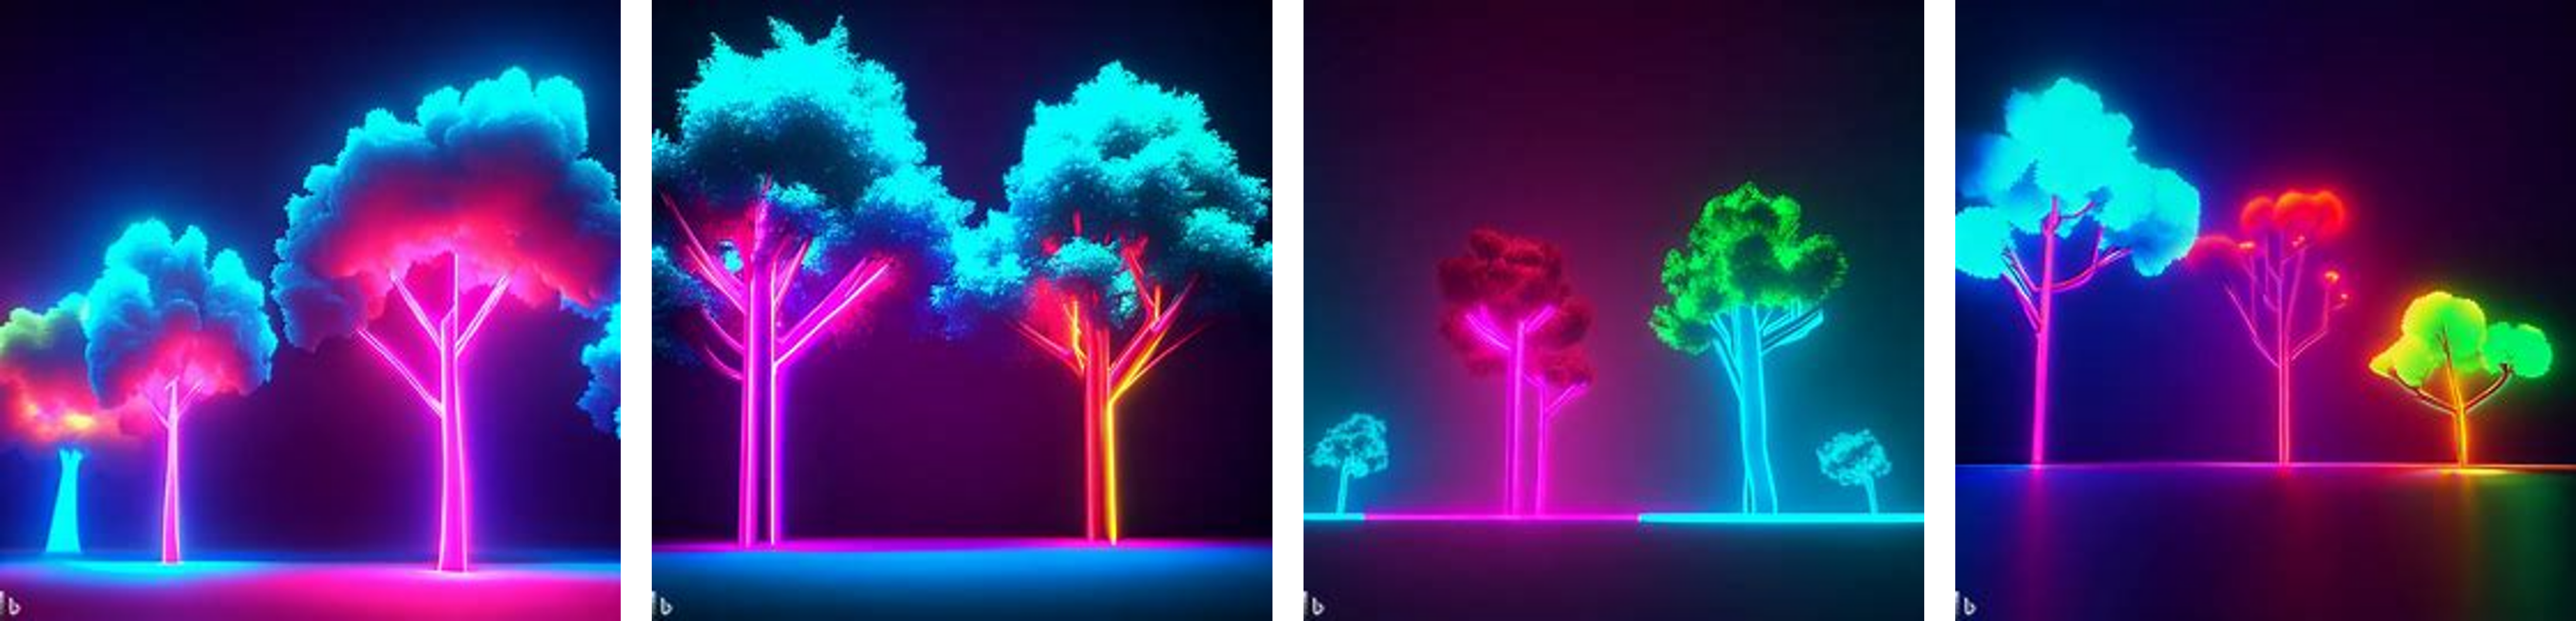 neon trees